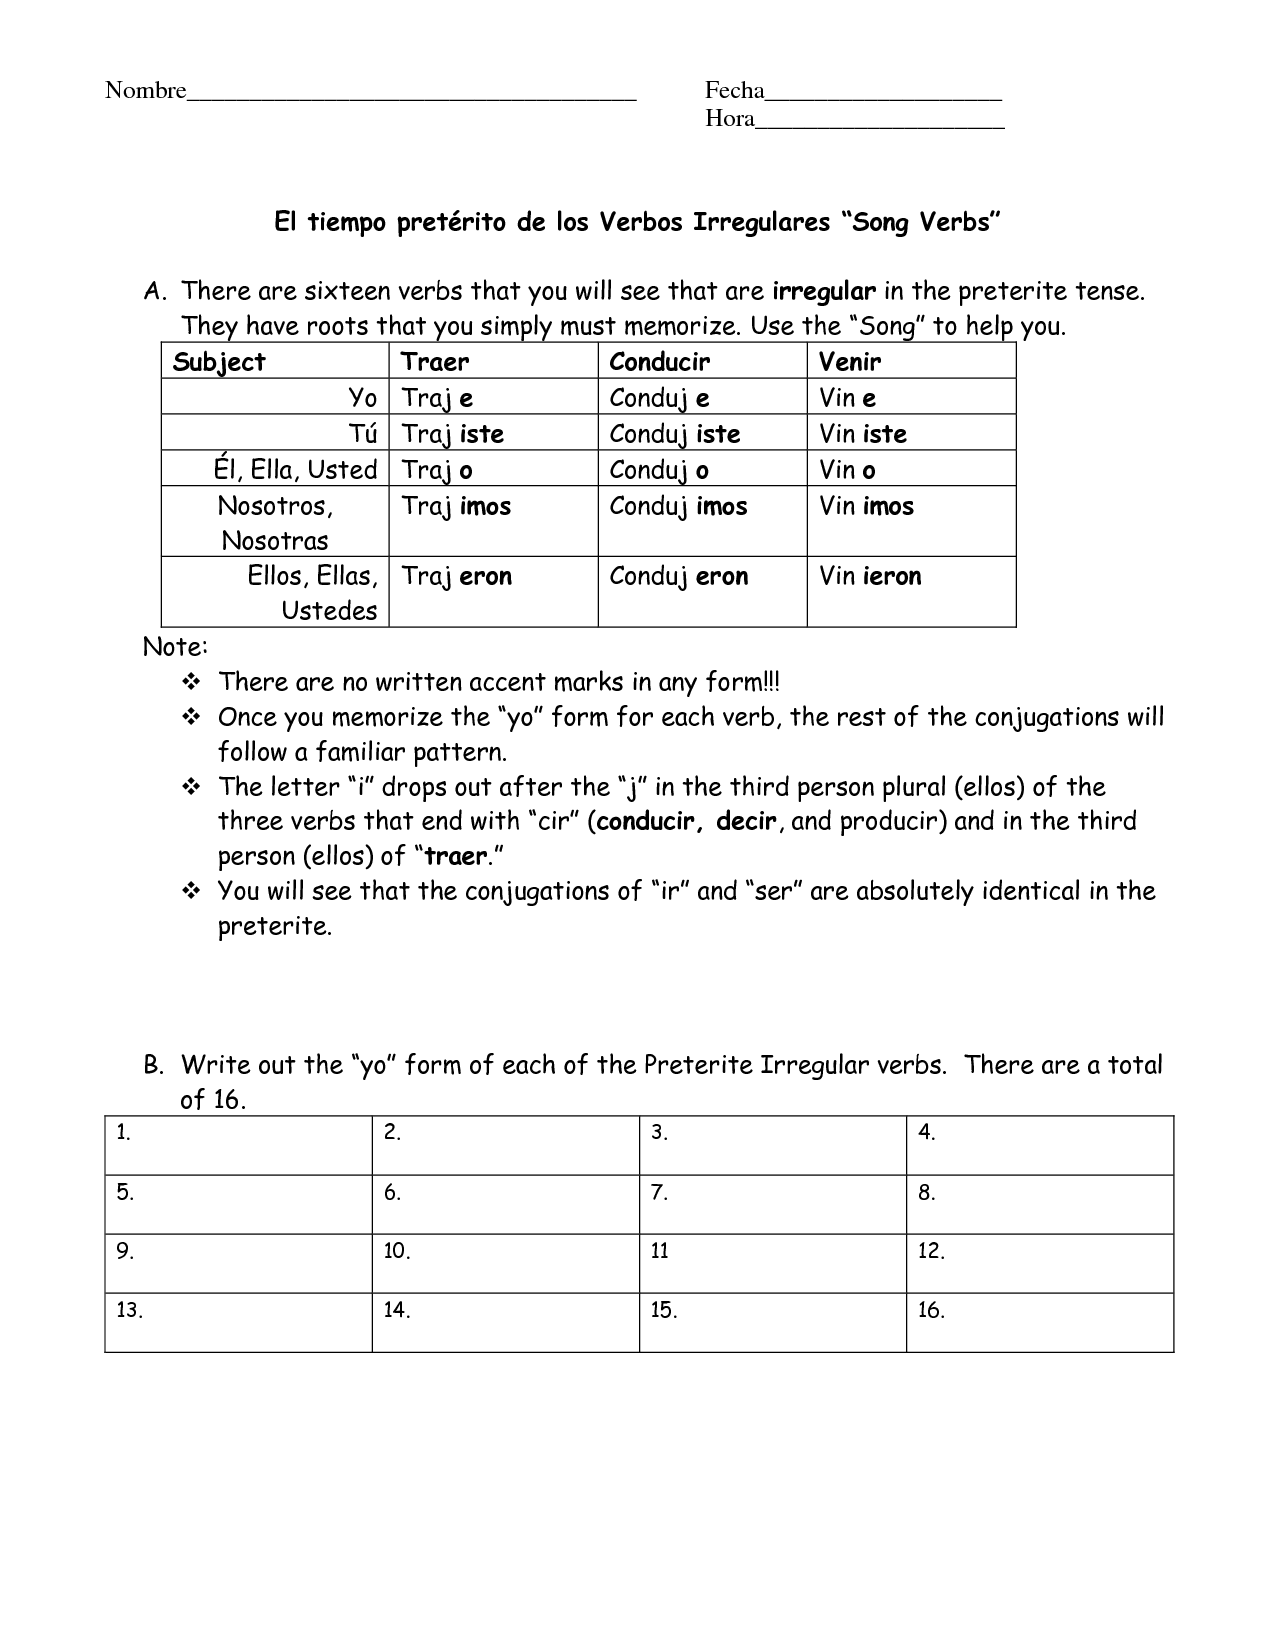 spanish-preterite-irregulars-cheat-sheet-teaching-resources